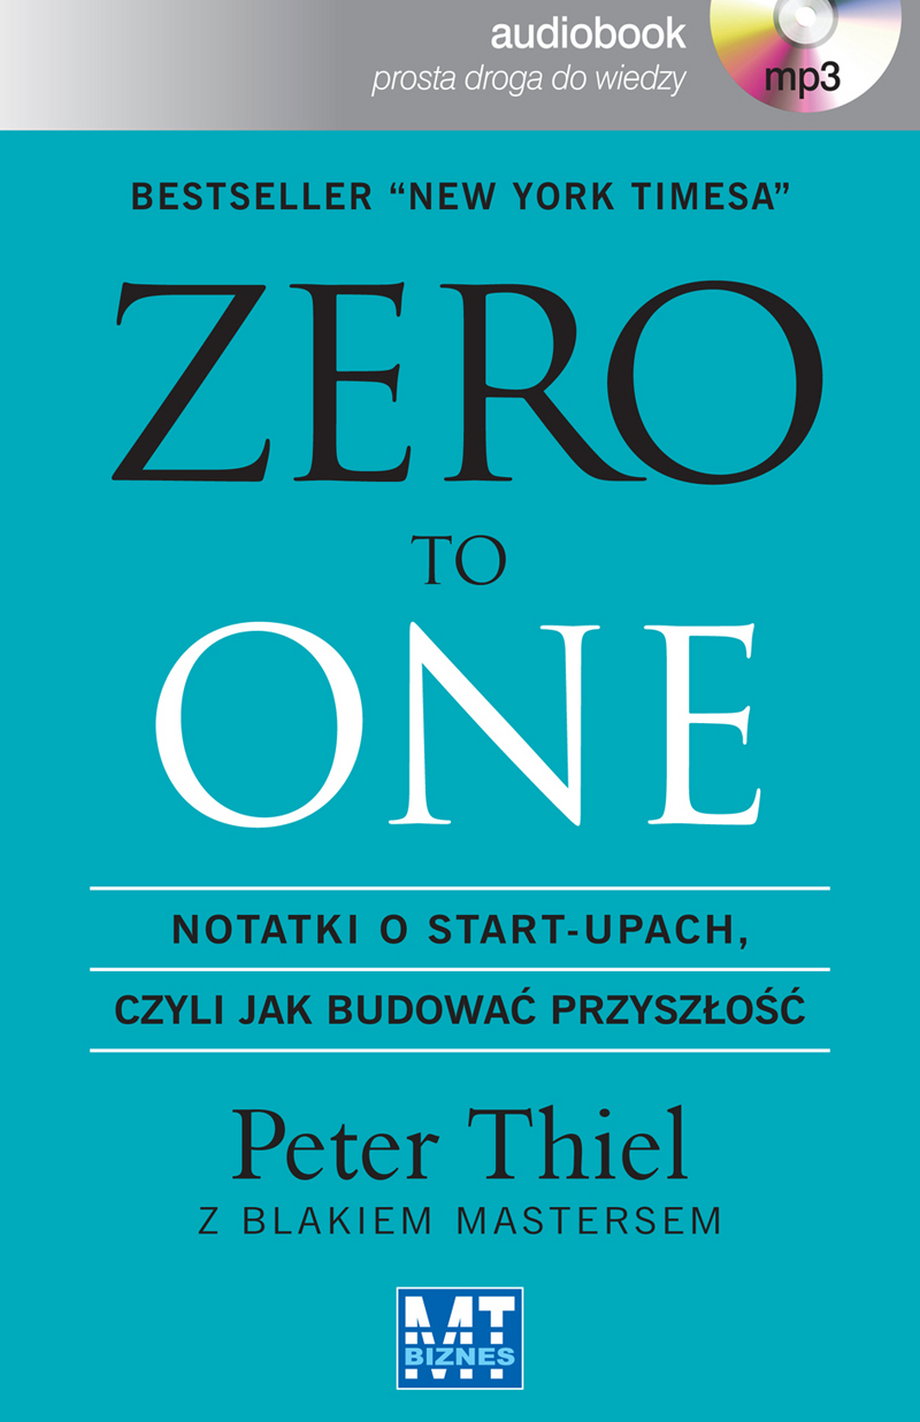 Peter Thiel "Zero to One"